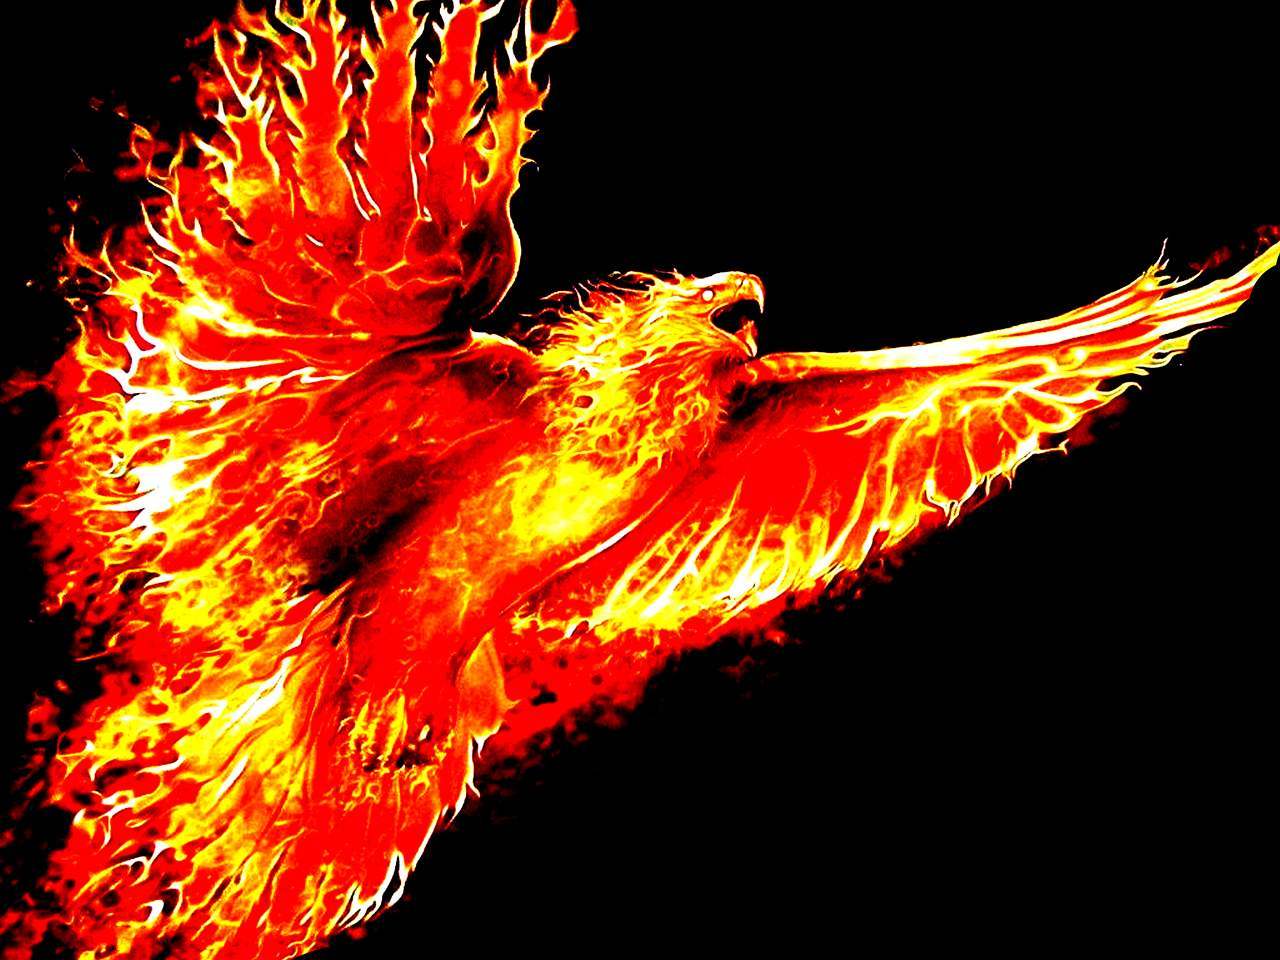 Immortal Phoenix: Реална ли е птицата Phoenix? Ако е така, все още ли е жив? 8